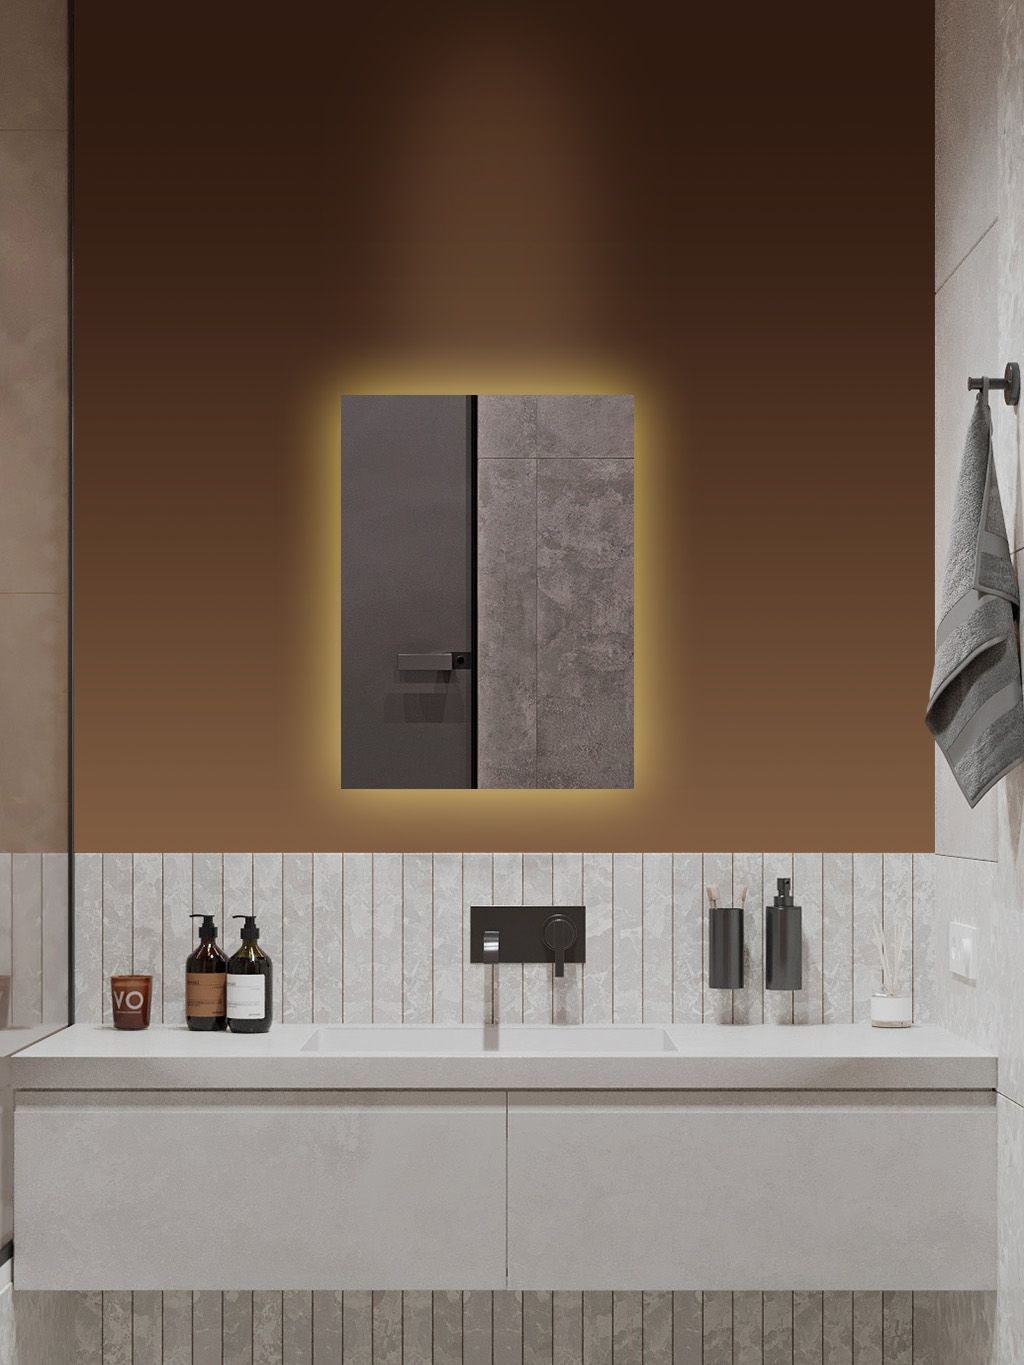 Зеркало для ванной Qwerty 70*50 вертикальное с тёплой LED-подсветкой